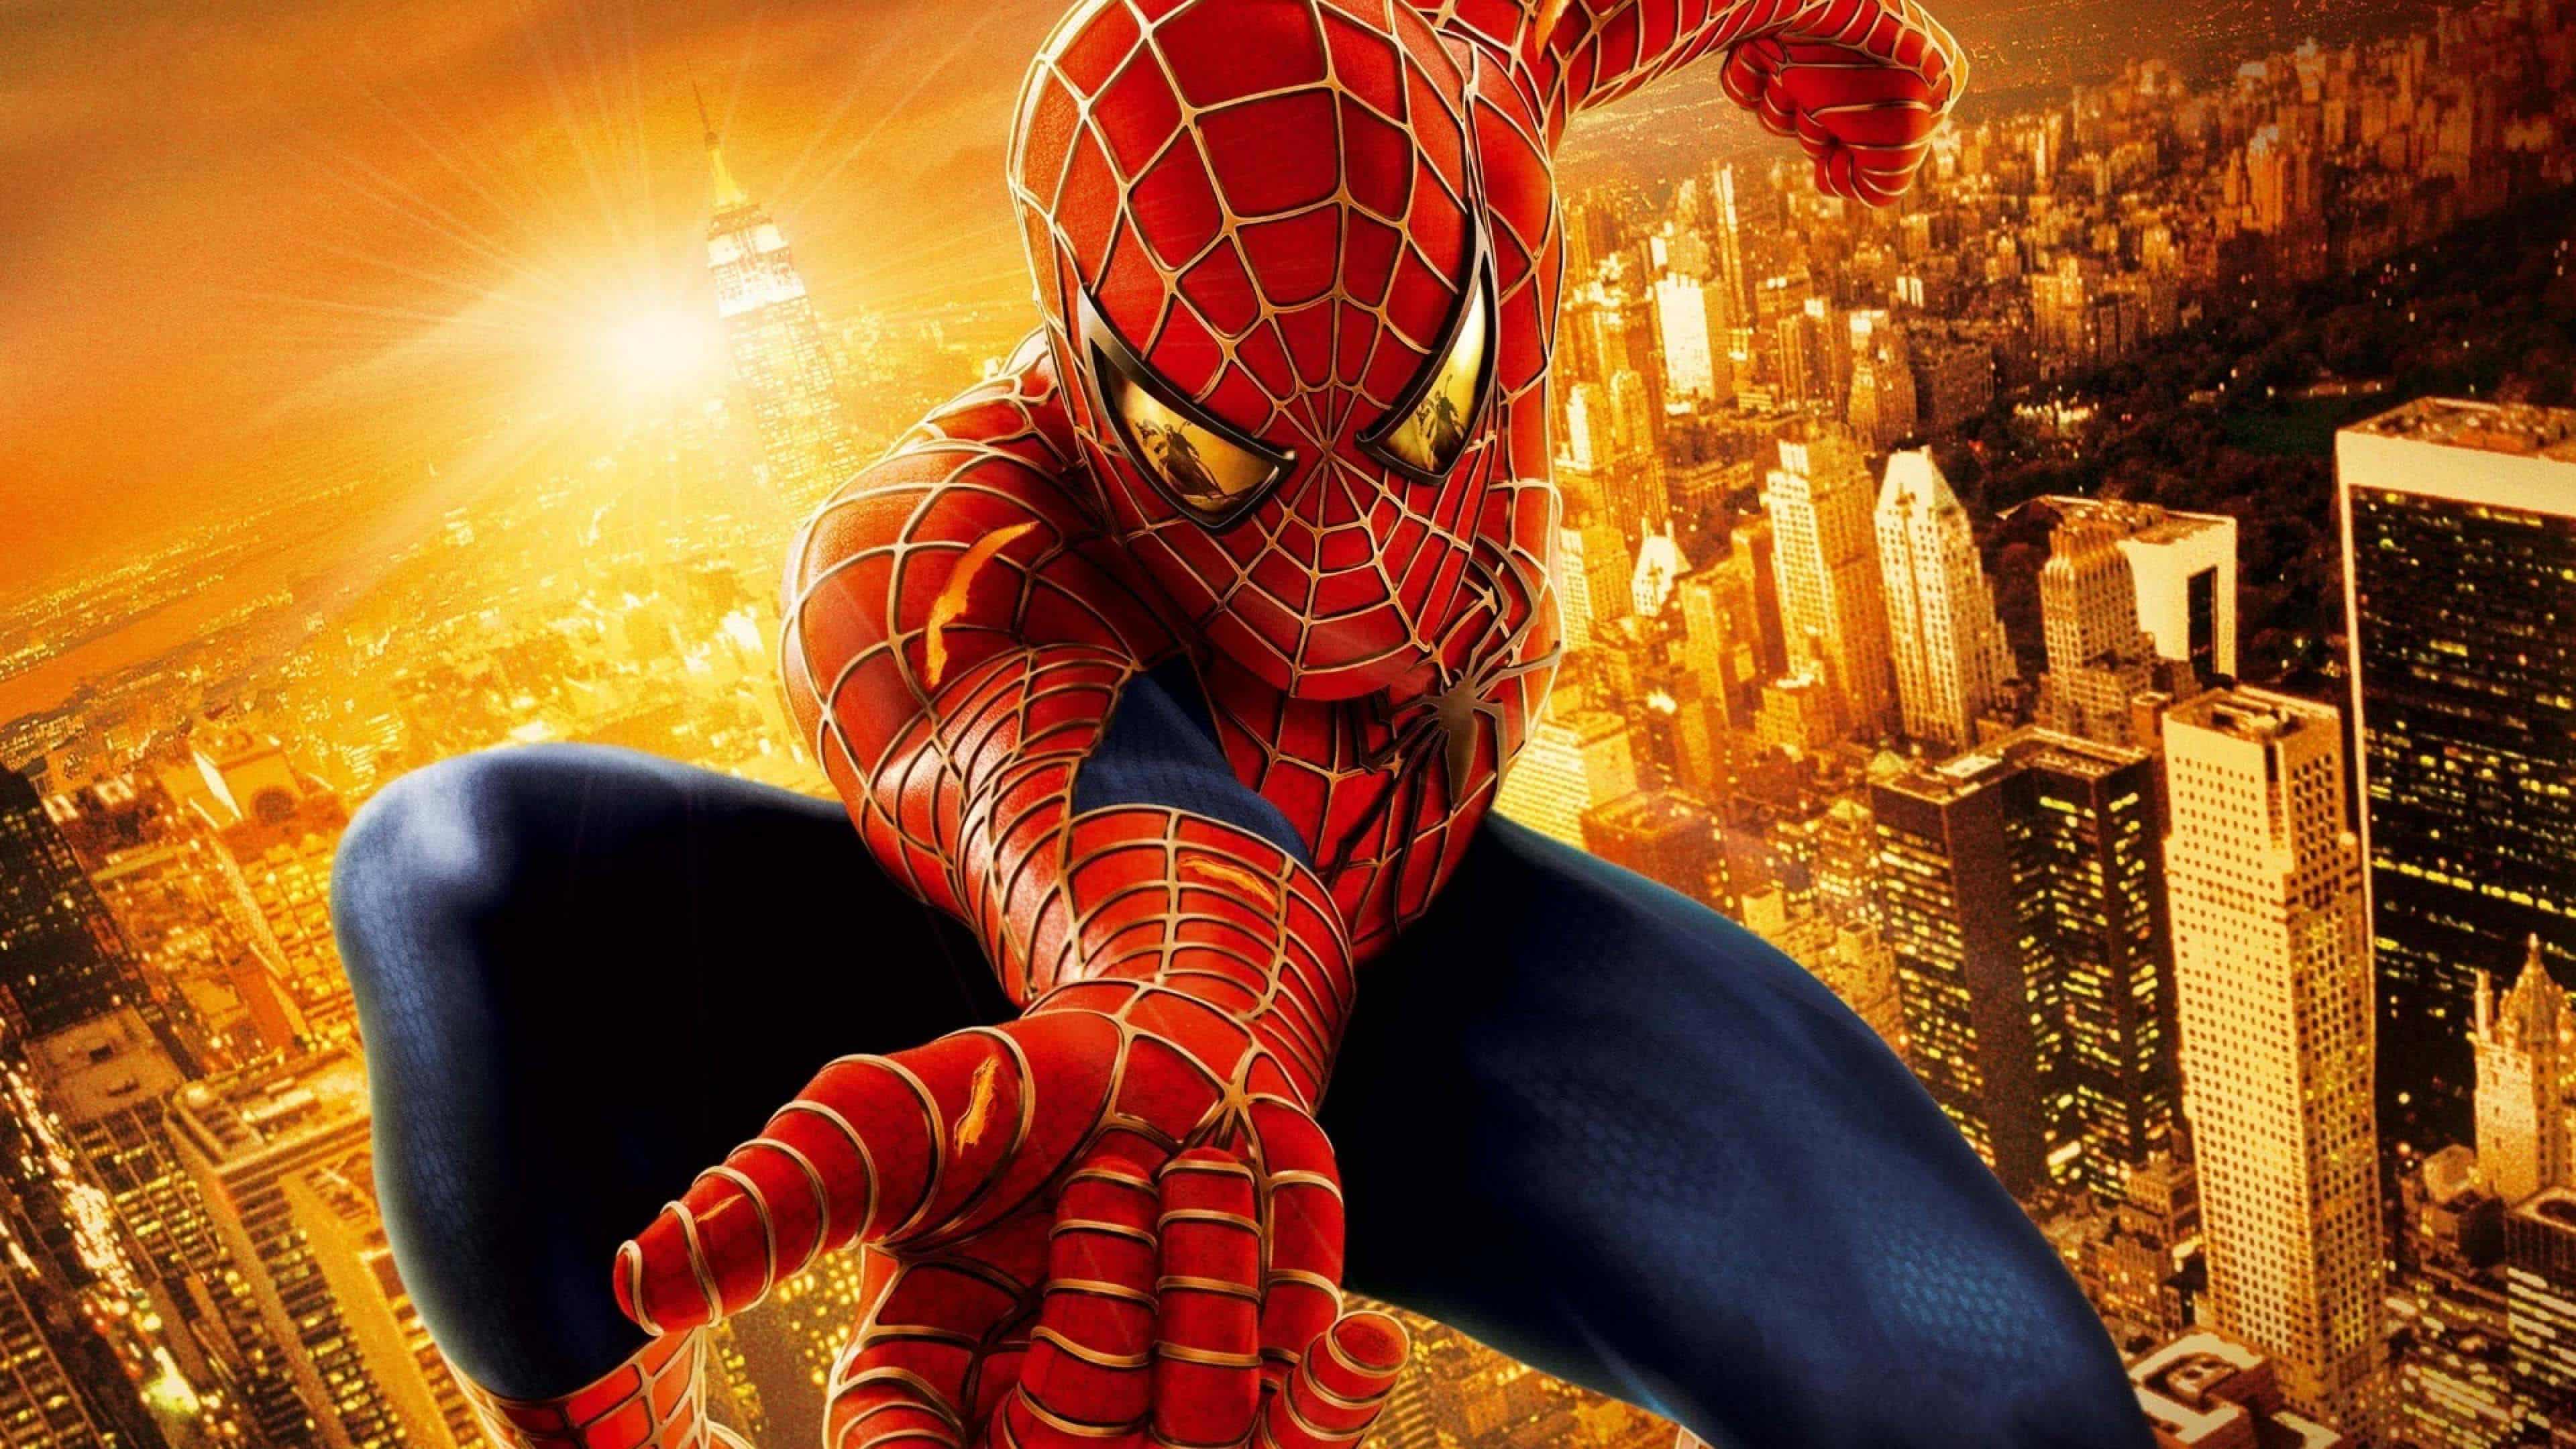 fond d'écran spiderman,homme araignée,super héros,personnage fictif,oeuvre de cg